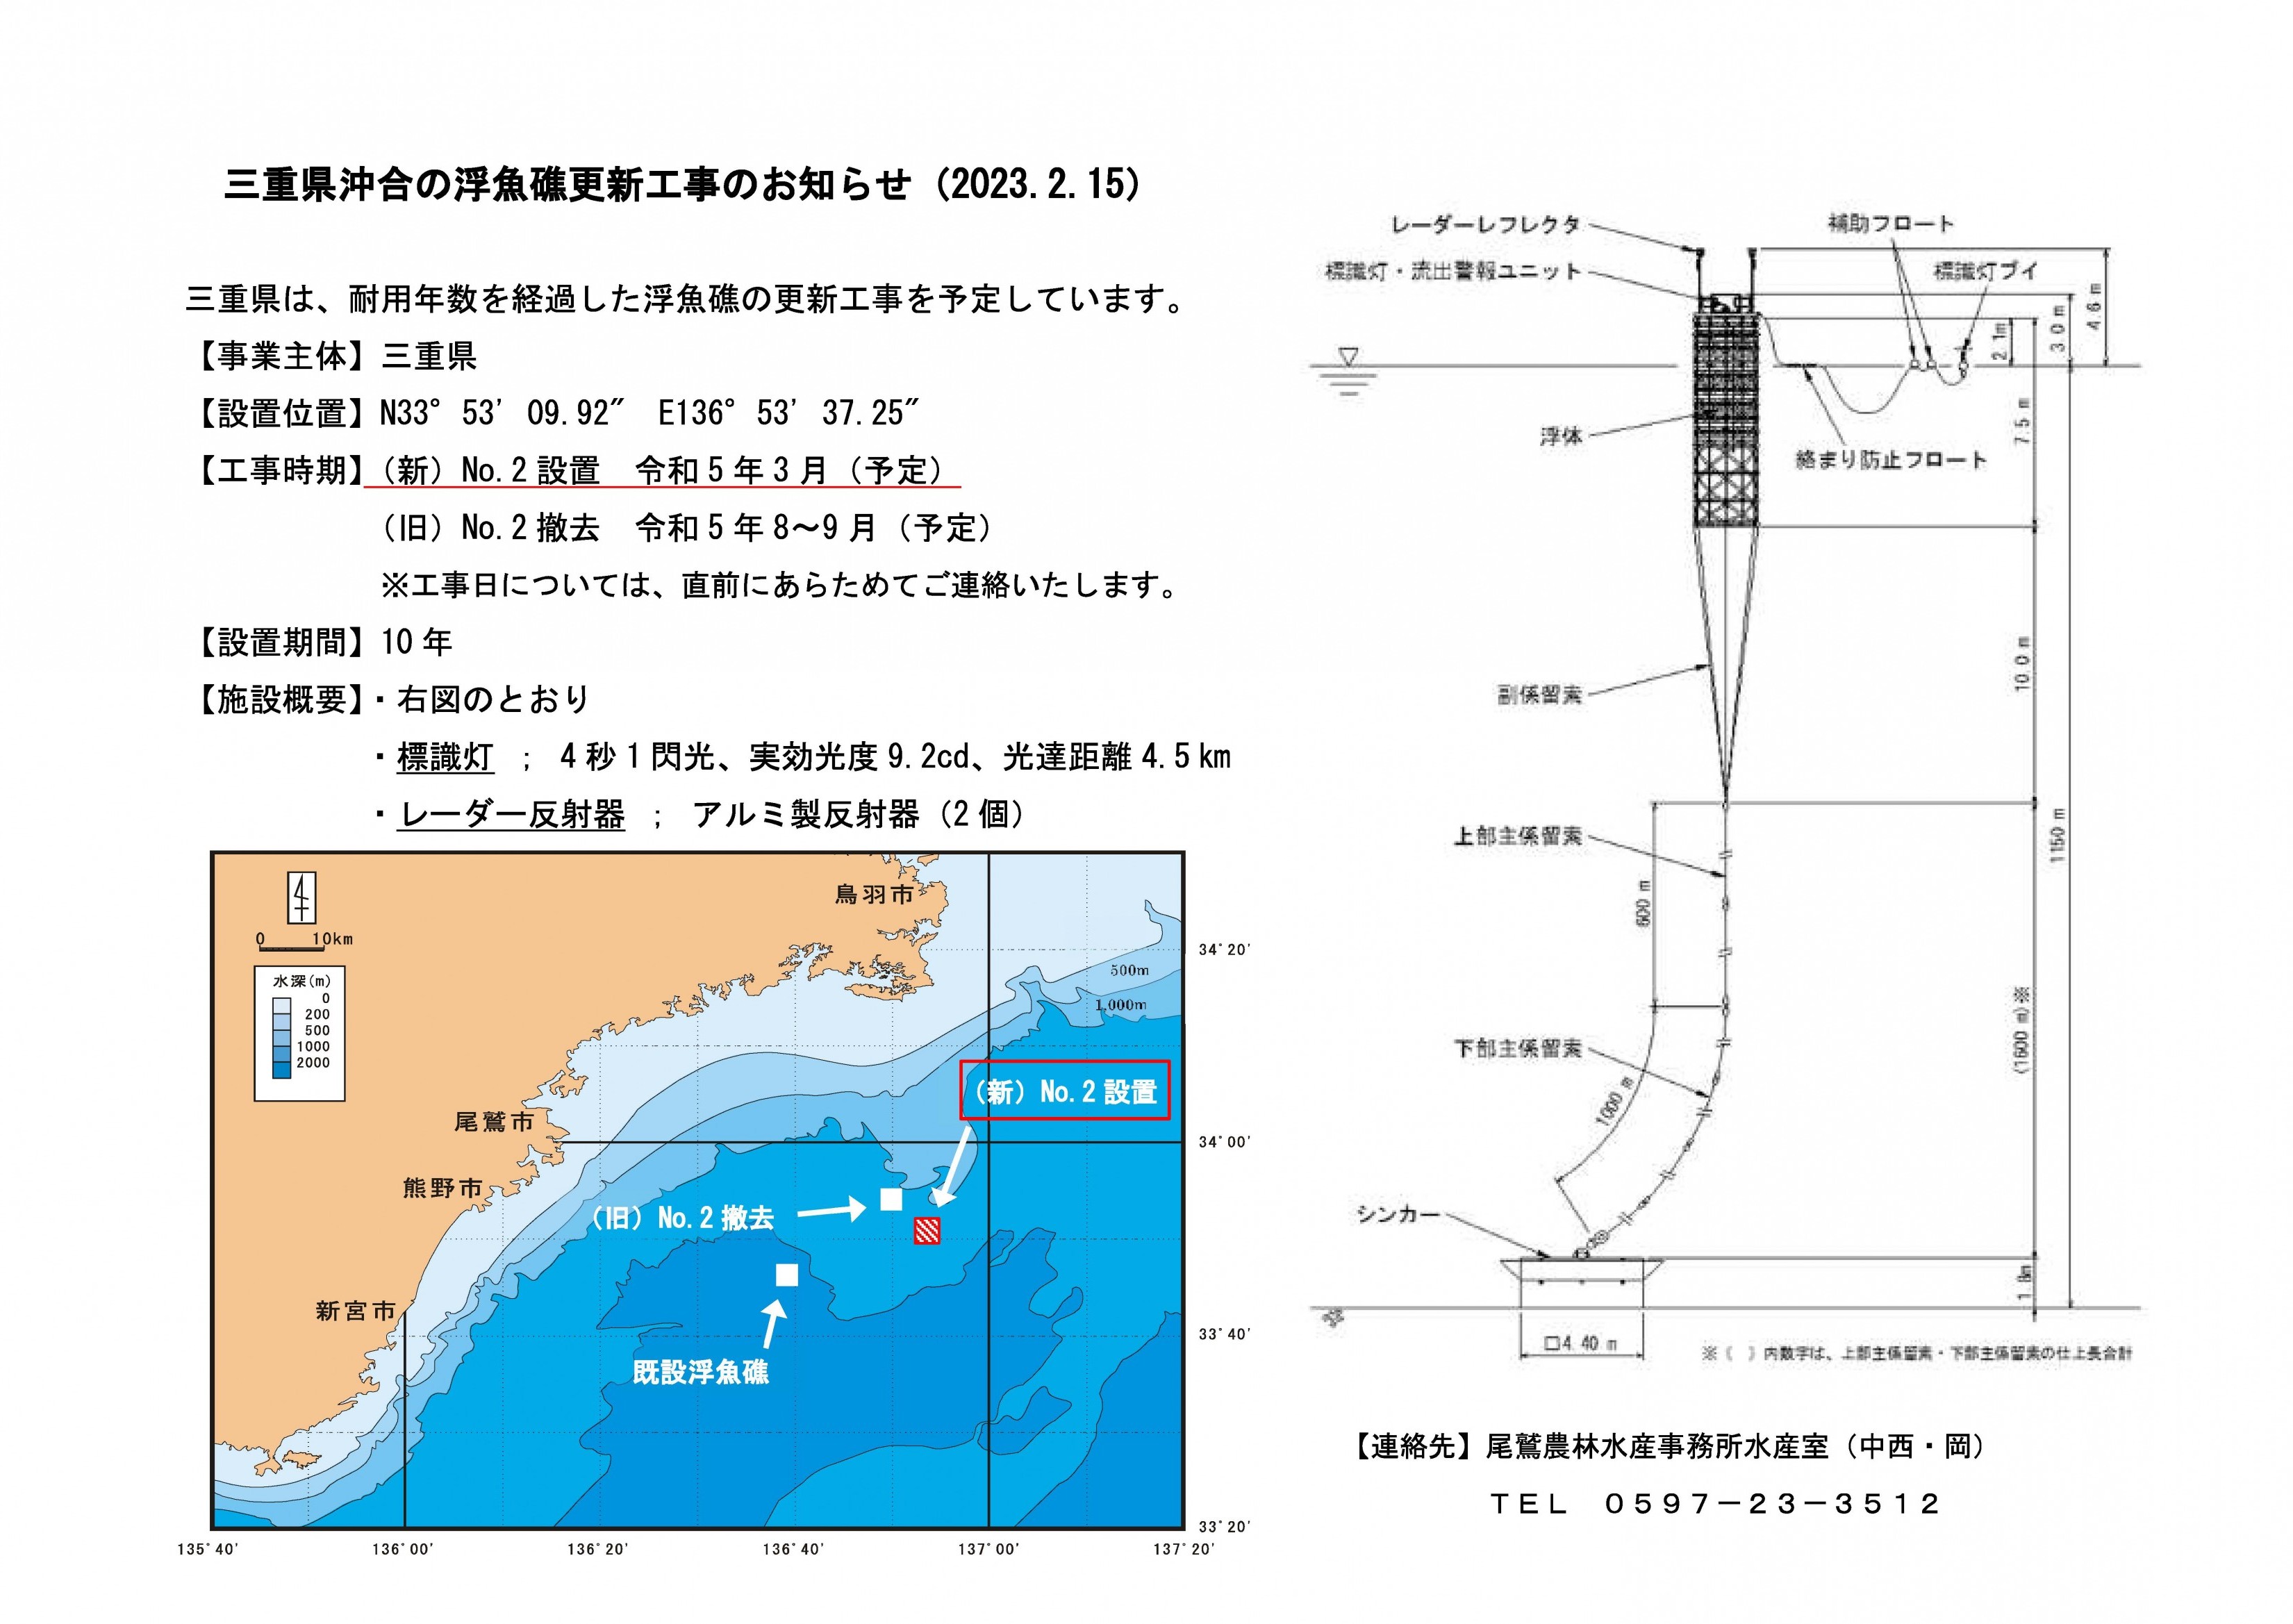 三重県沖合の浮魚礁更新工事のお知らせ（2023.2.15）